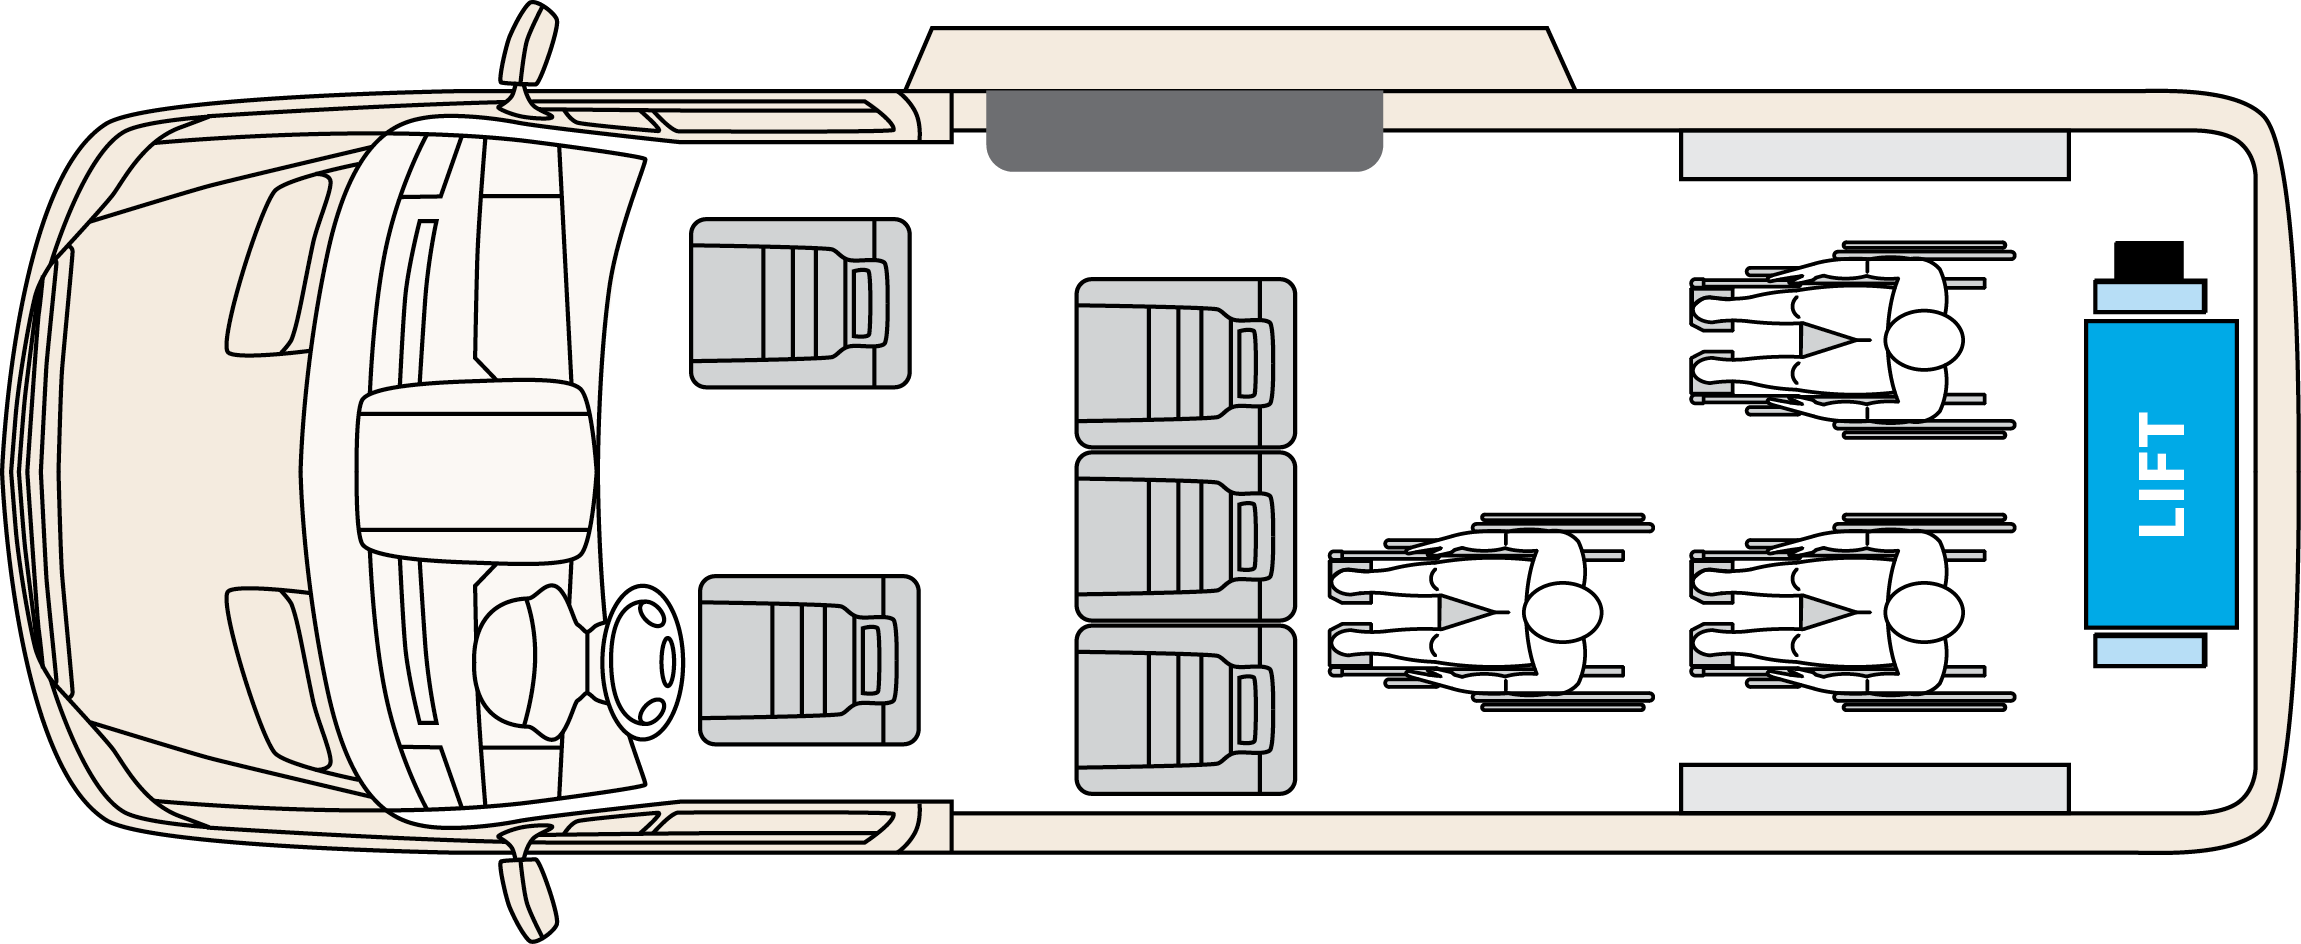 Driverge van layout with smartfloor